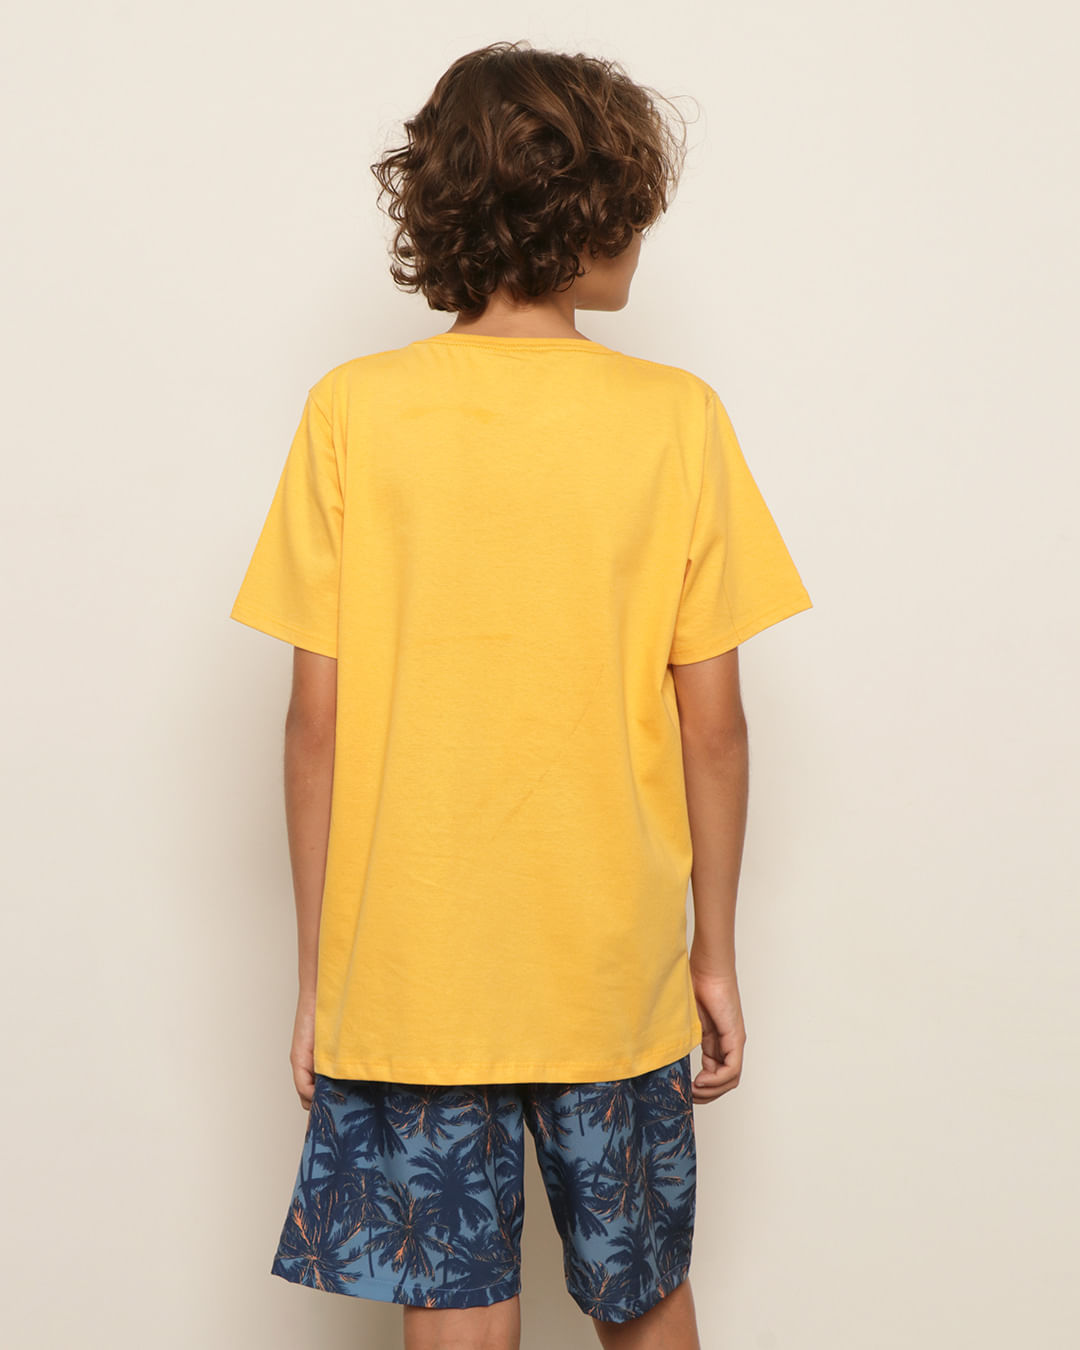 Camiseta-03270272-Mc-M-1016-Tropical---Amarelo-Medio